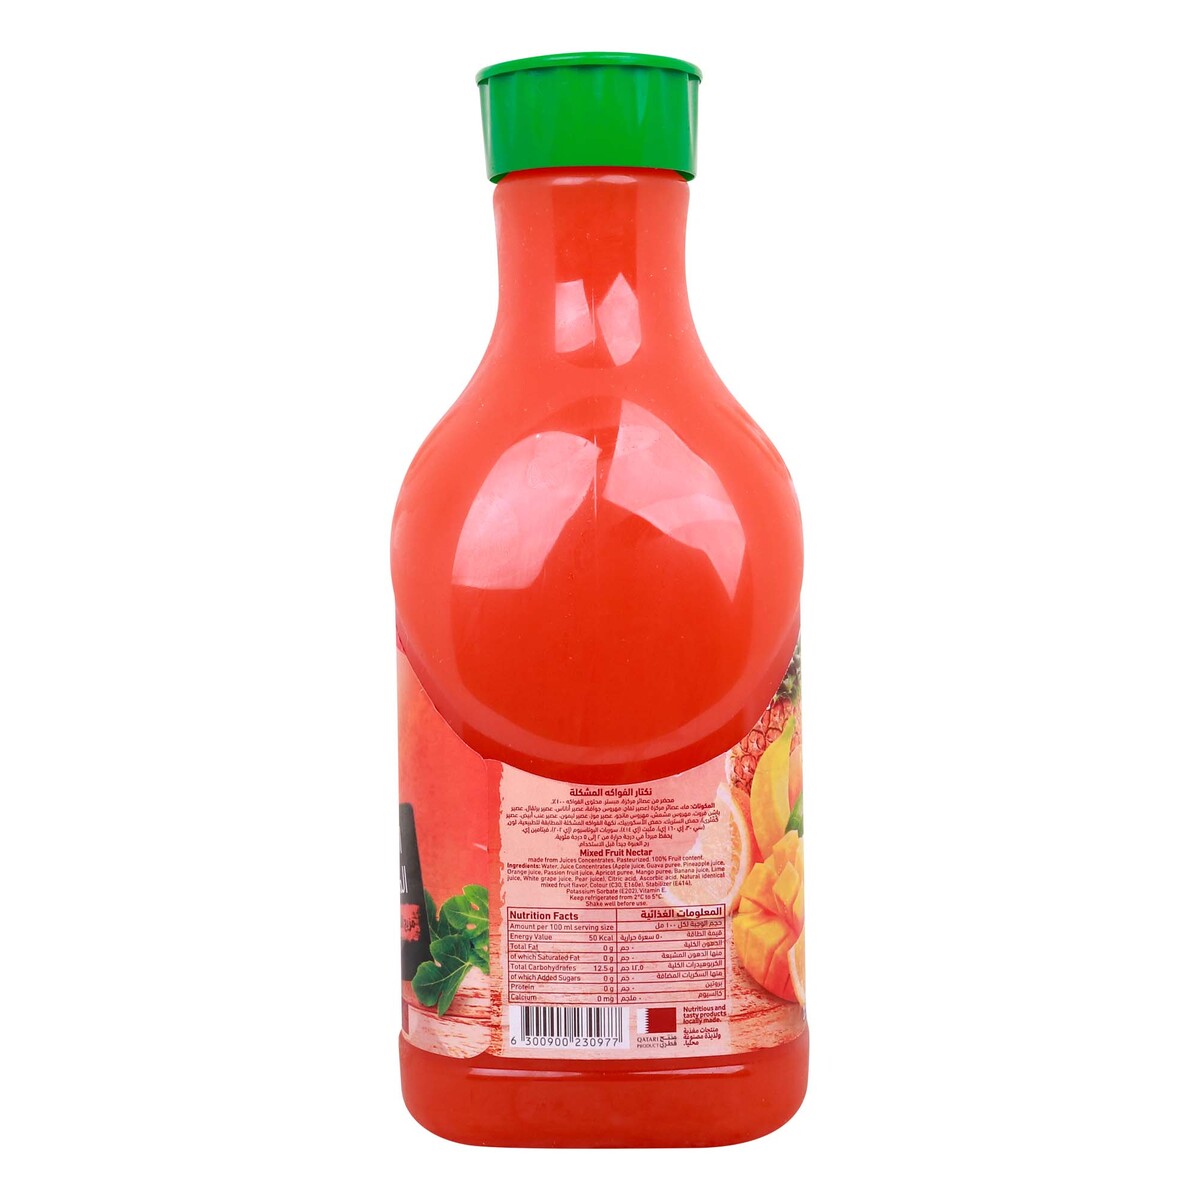 Baladna Mixed Fruit Juice 1.5 Litre